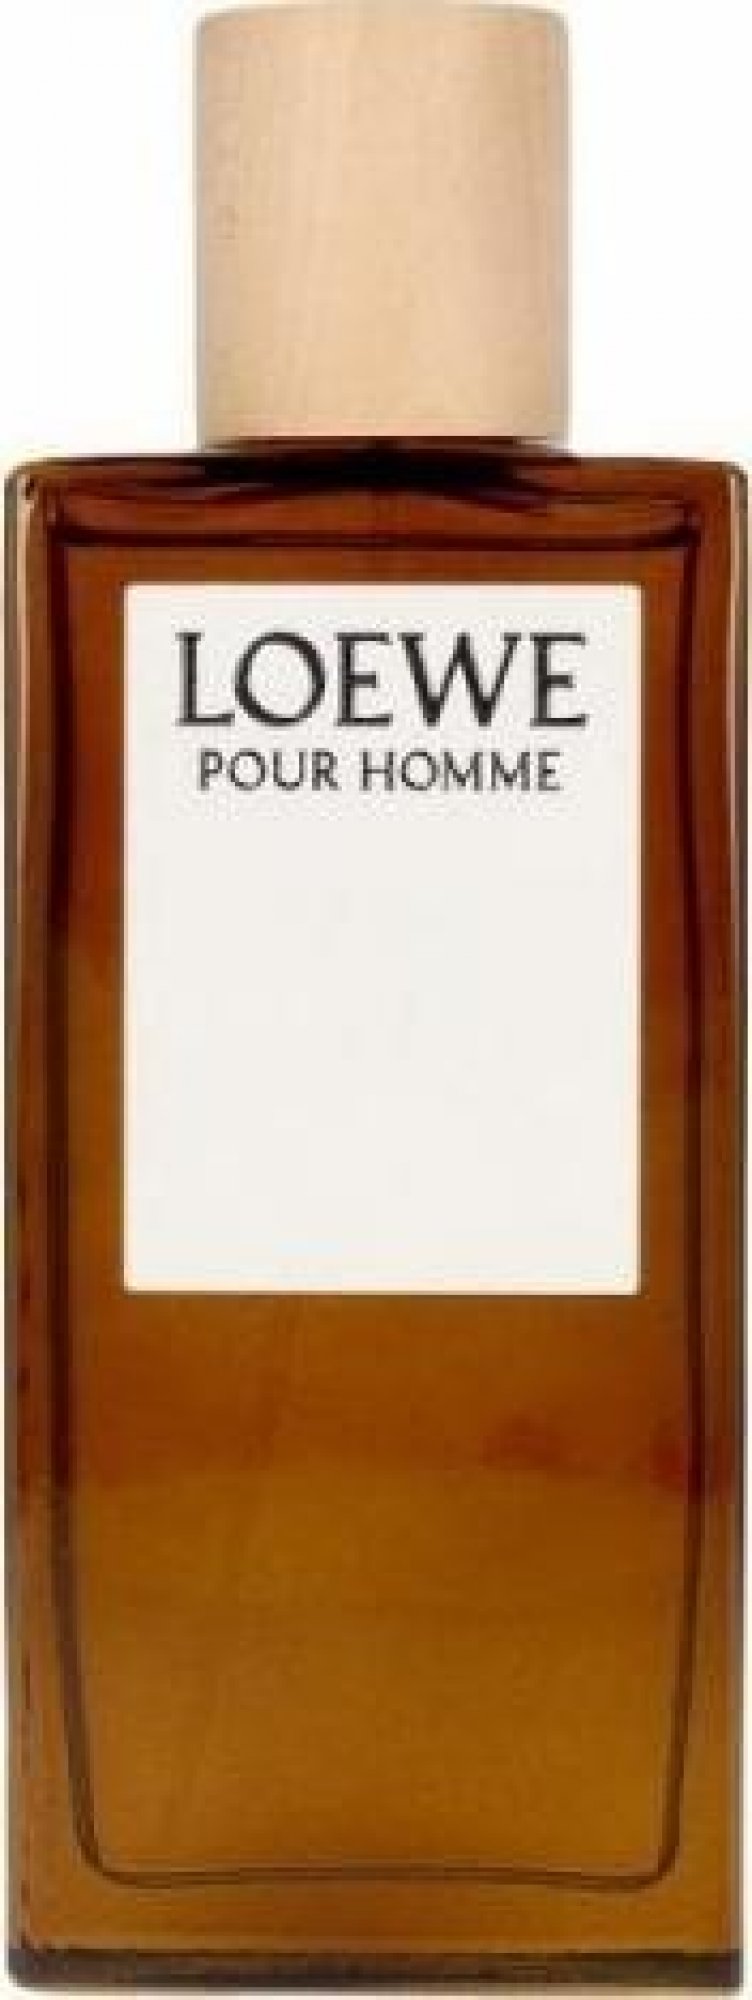 Loewe Loewe Pour Homme, edt 100ml - Teszter